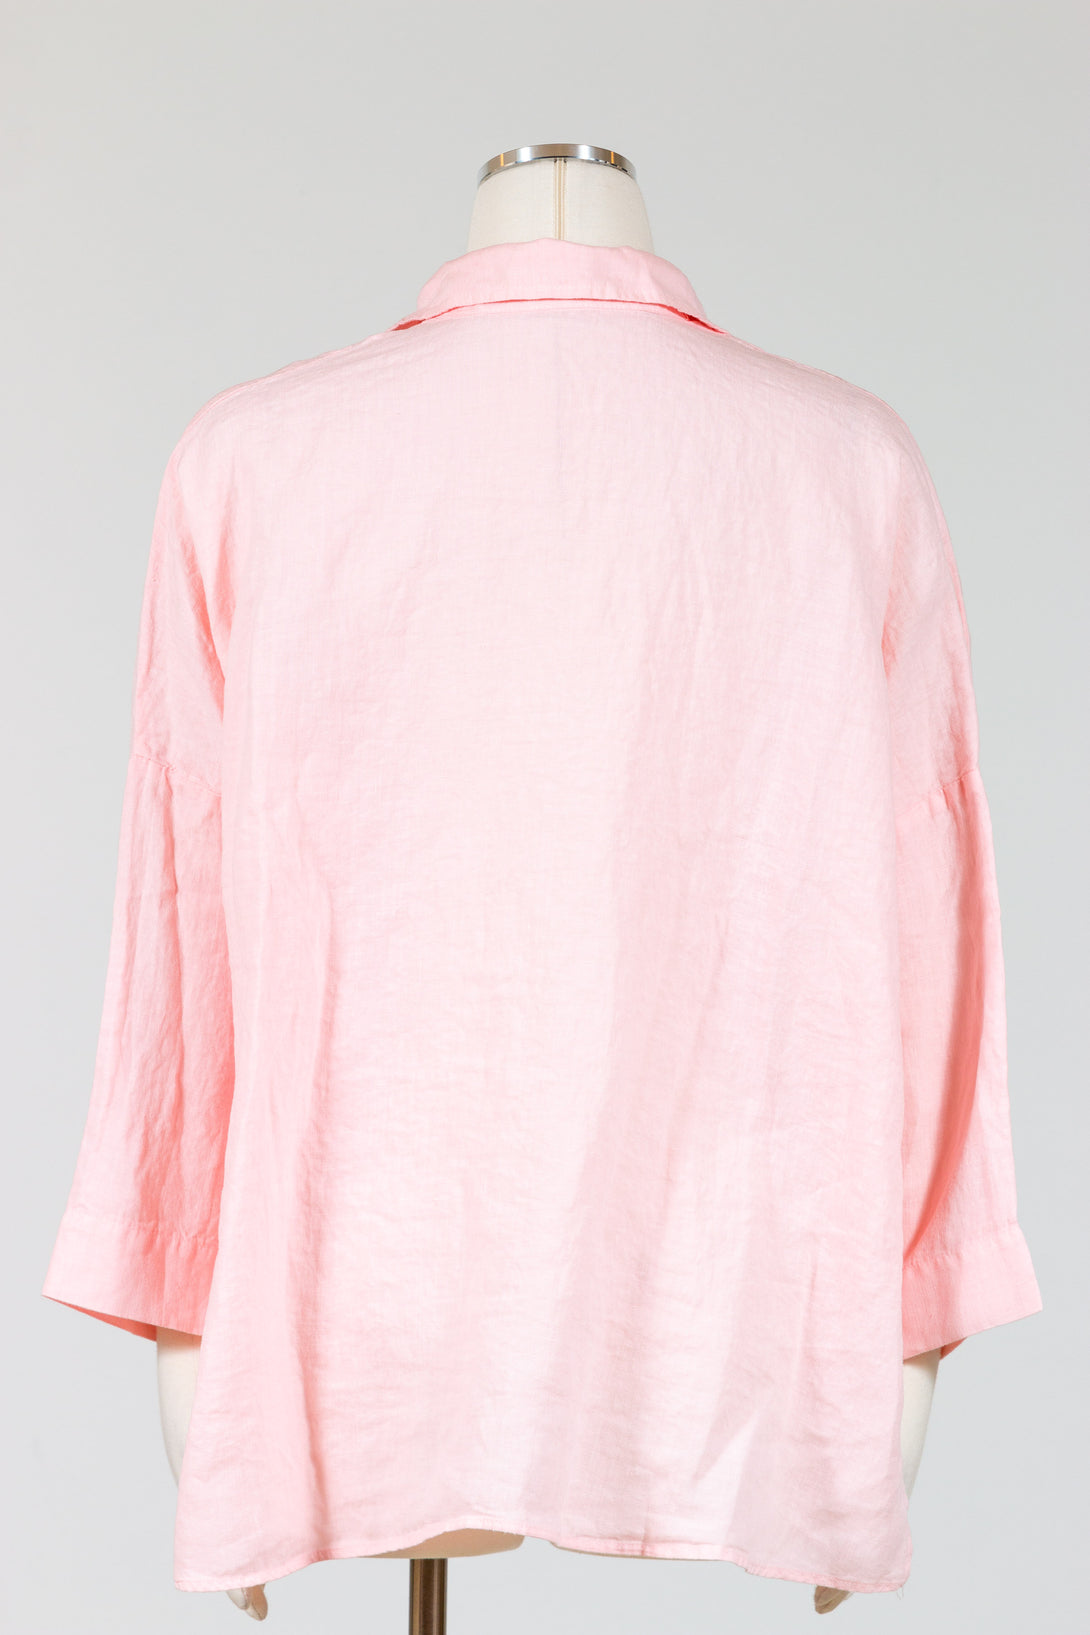 CutLoose-HighLow-Shirt-PinkSalt-Pink